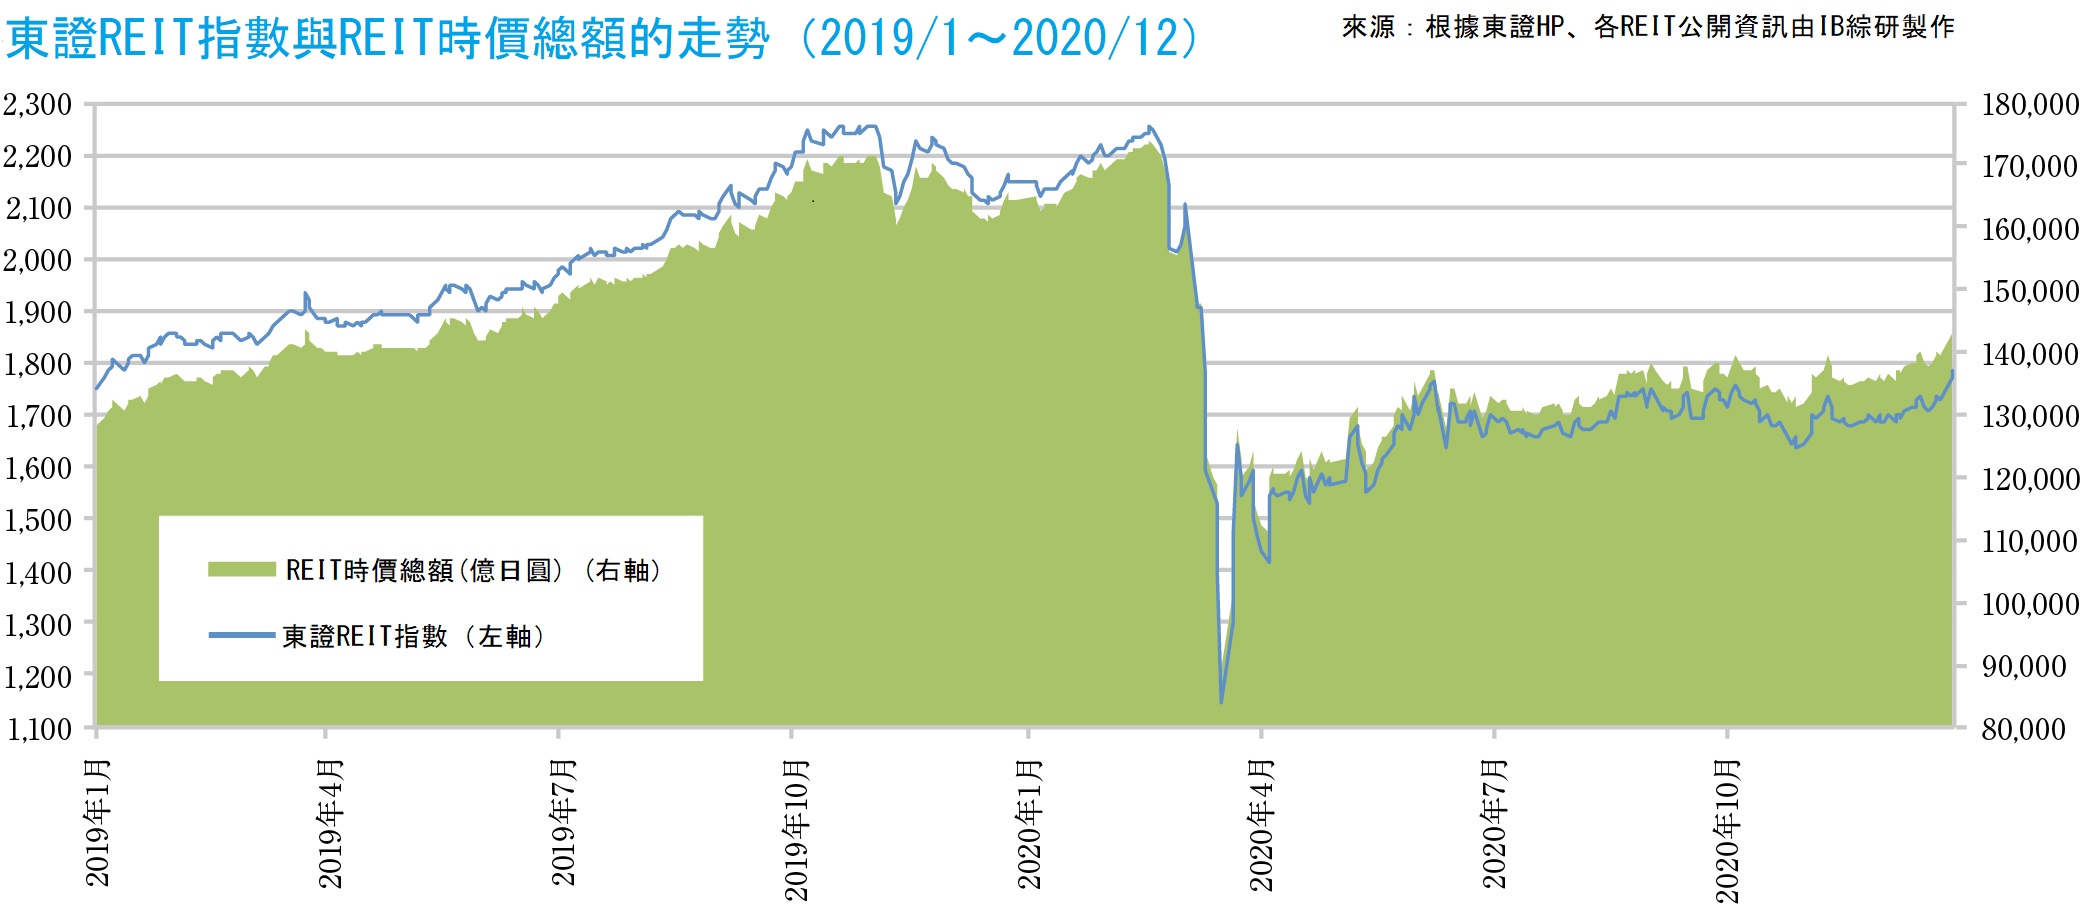 J-REIT（日本房地產投資信託） 到2020年底，這一數字有所增加，運用資產餘額達到了20萬億日元。  在嚴峻的範疇內進行摸索的重組措施